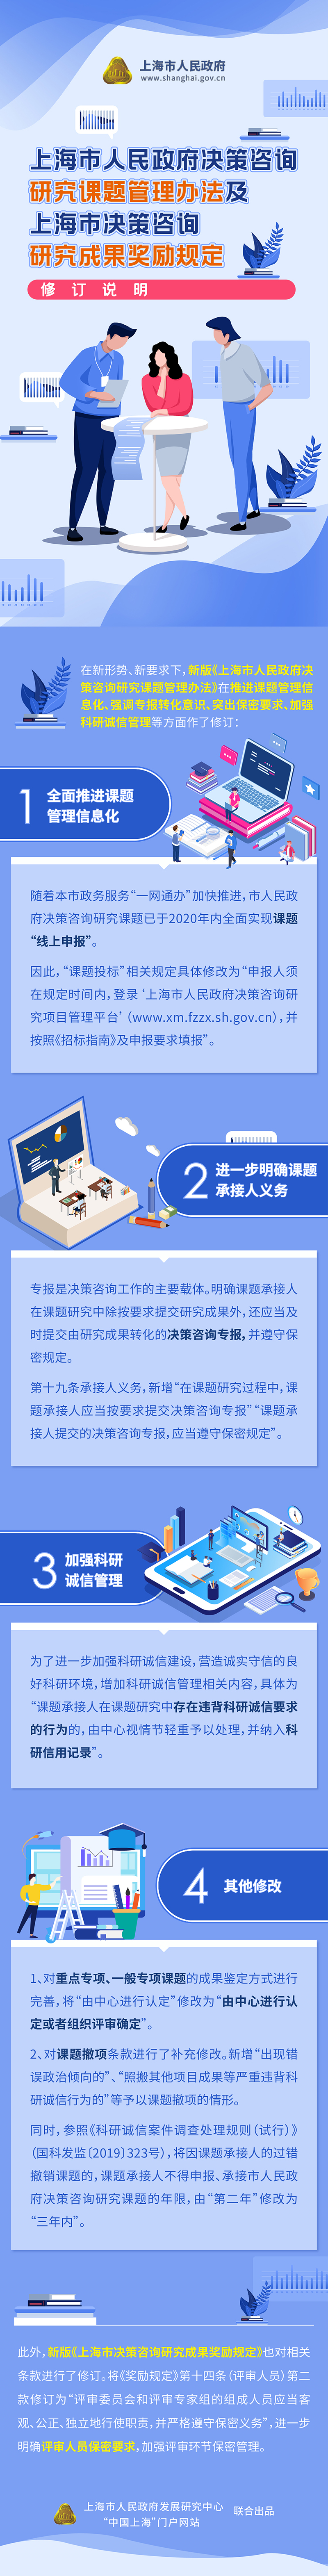 上海市决策咨询研究课题管理办法及成果奖励规定修订说明.jpg